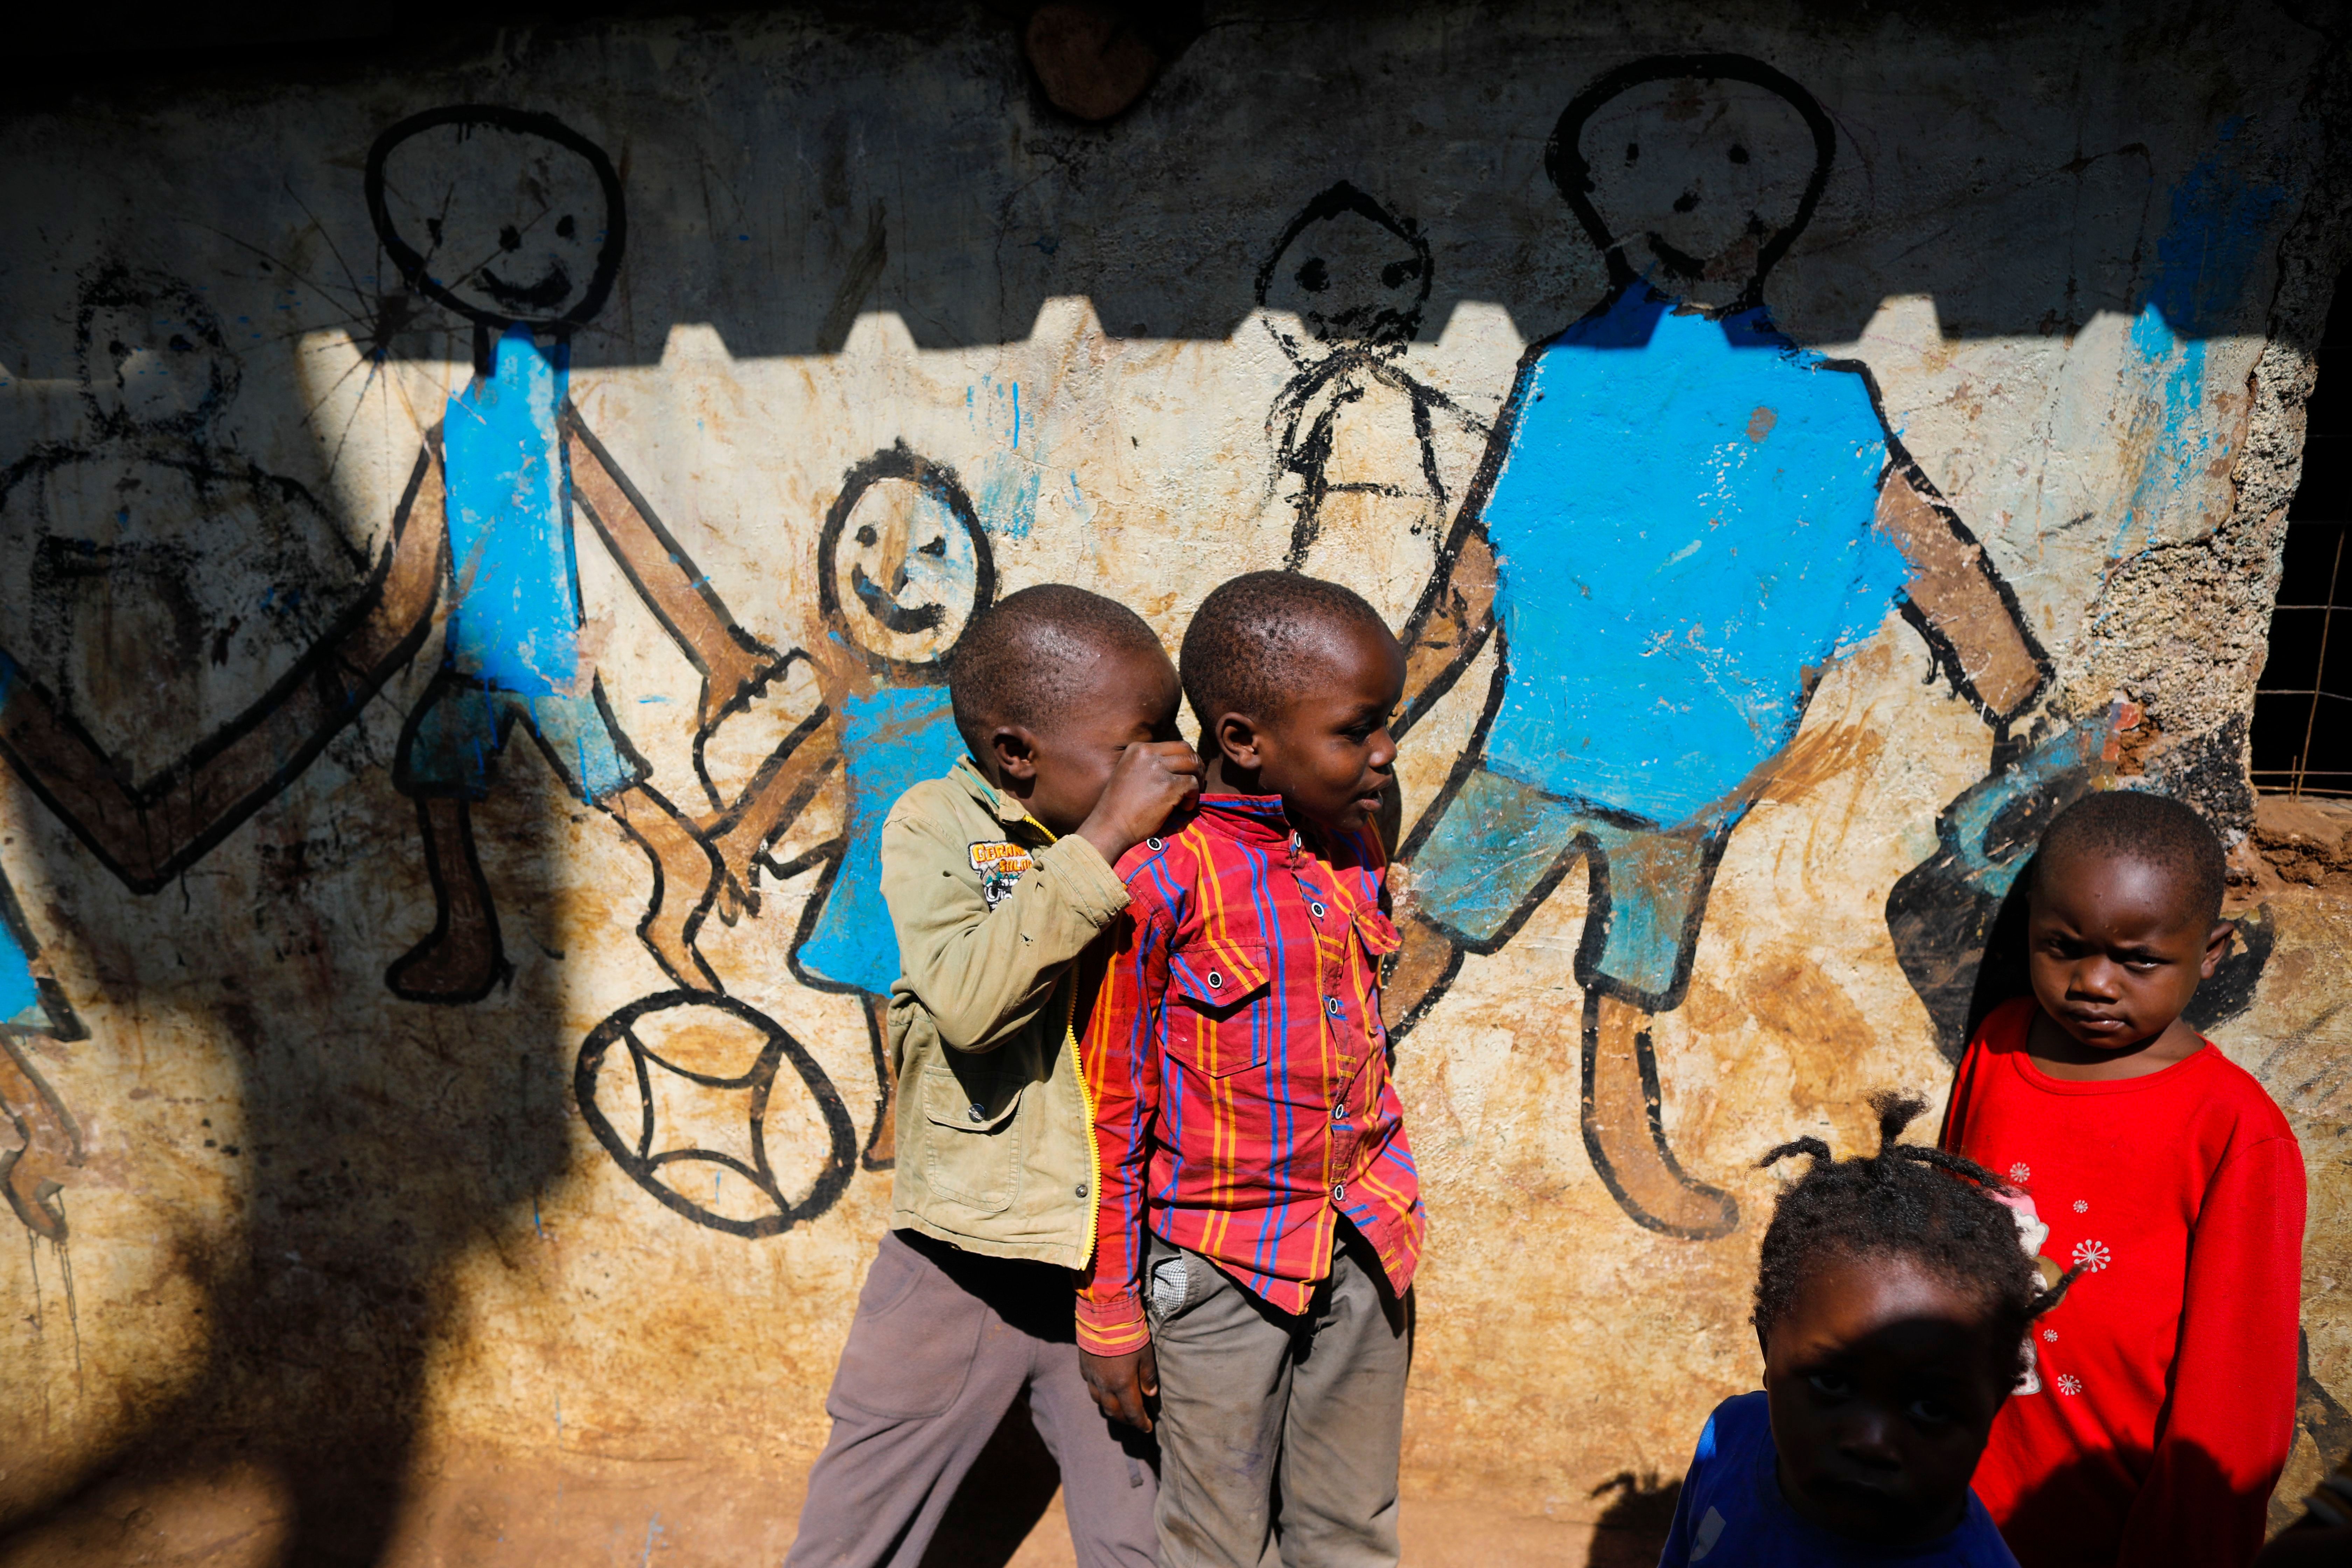 Kenyan Orphanage Volunteering and Masai Mara Safari Tour for One